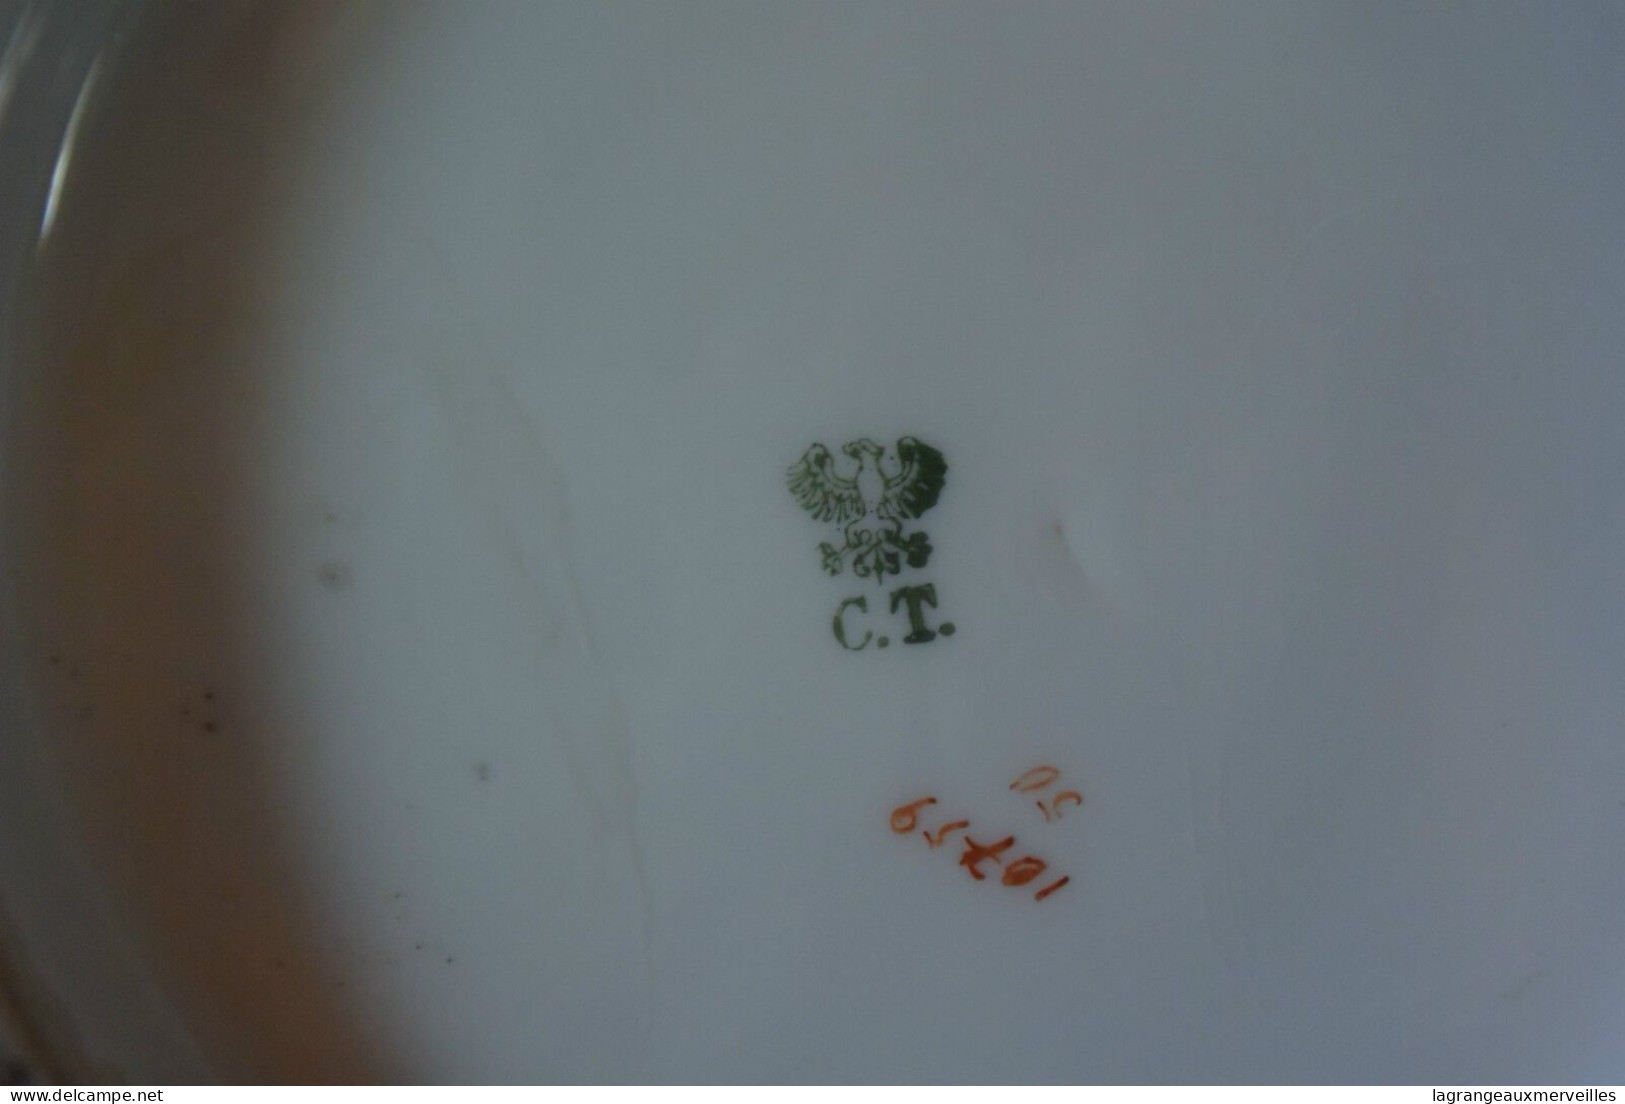 C44 Magnifique cache pot en forme de tasse marqué CT